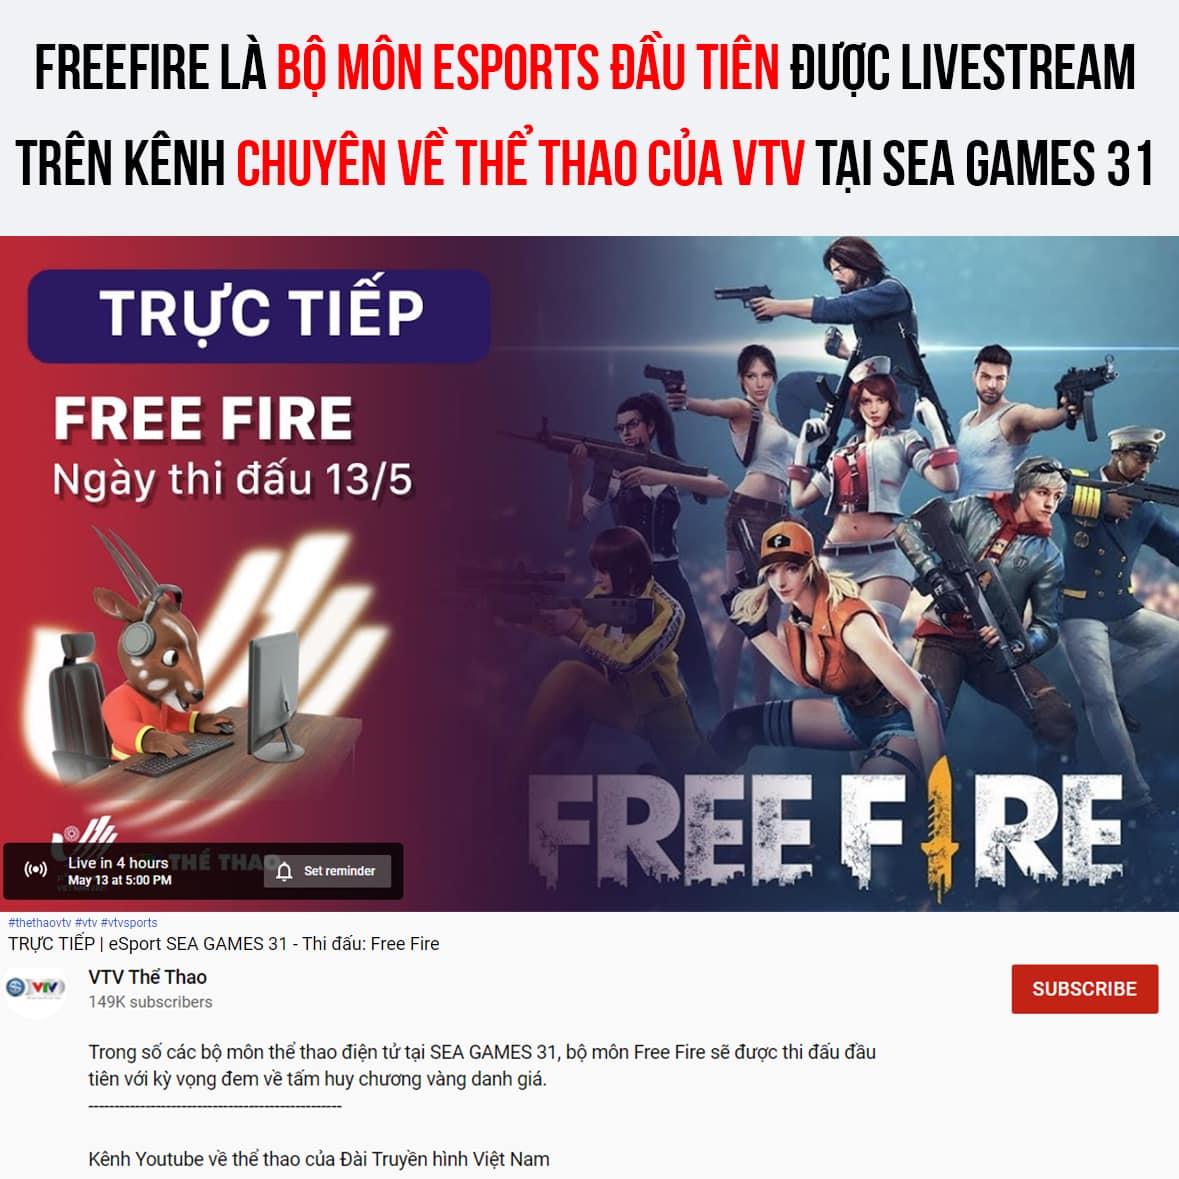 SEA Games 31 – Free Fire chứng tỏ vị thế ‘siêu cường’ khi nhận được sự ưu ái đặc biệt từ VTV